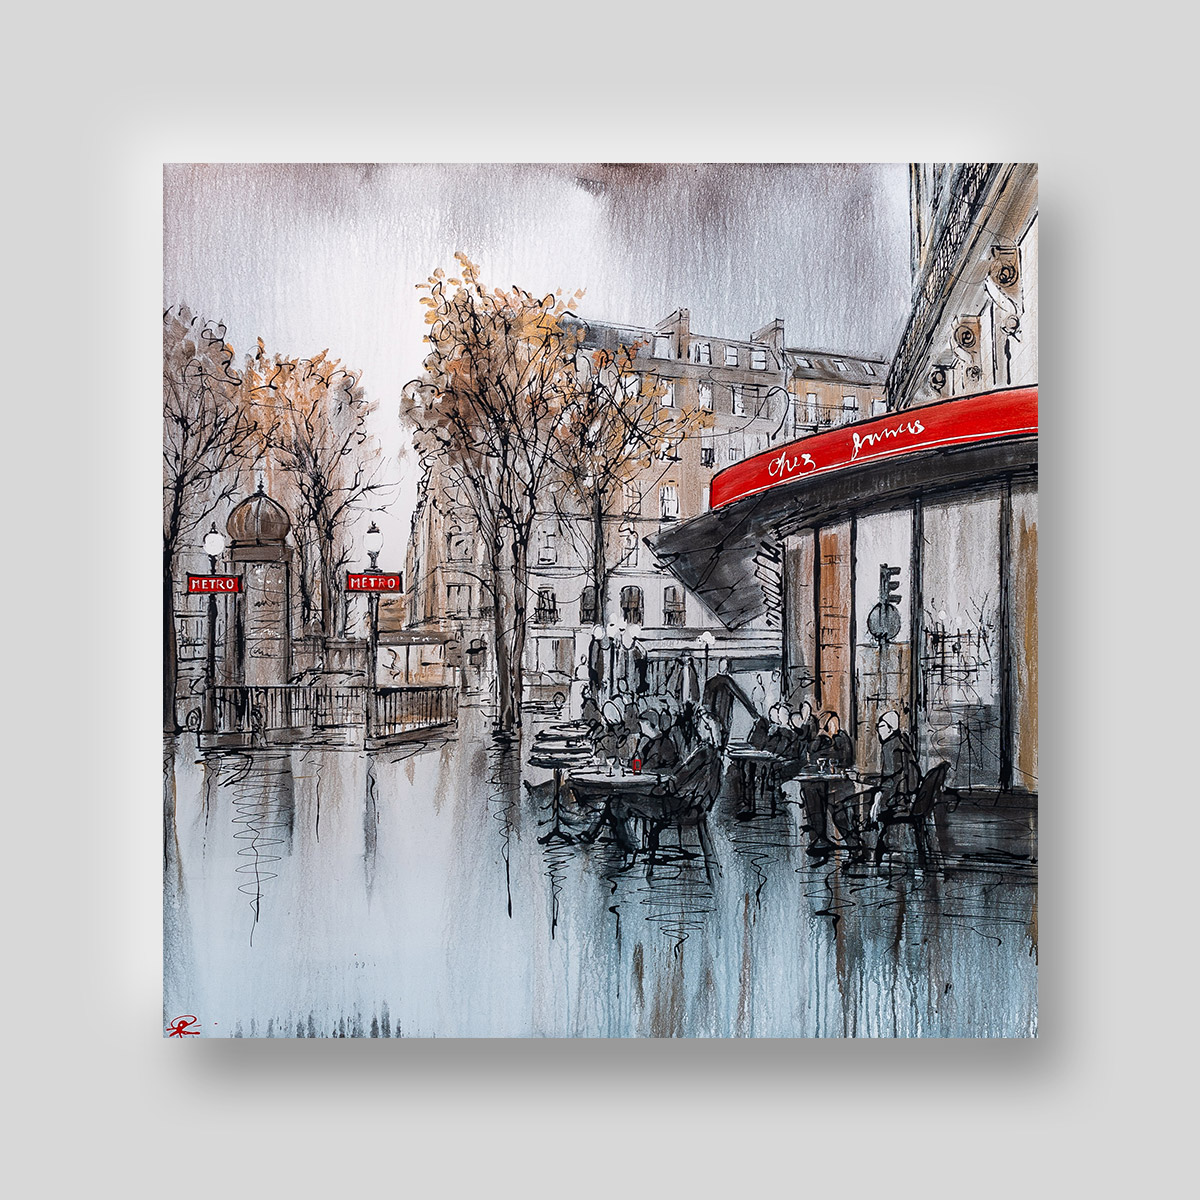 Parisian Life by Paul Kenton, UK contemporary cityscape artist, an original Paris café painting from his Paris Collection